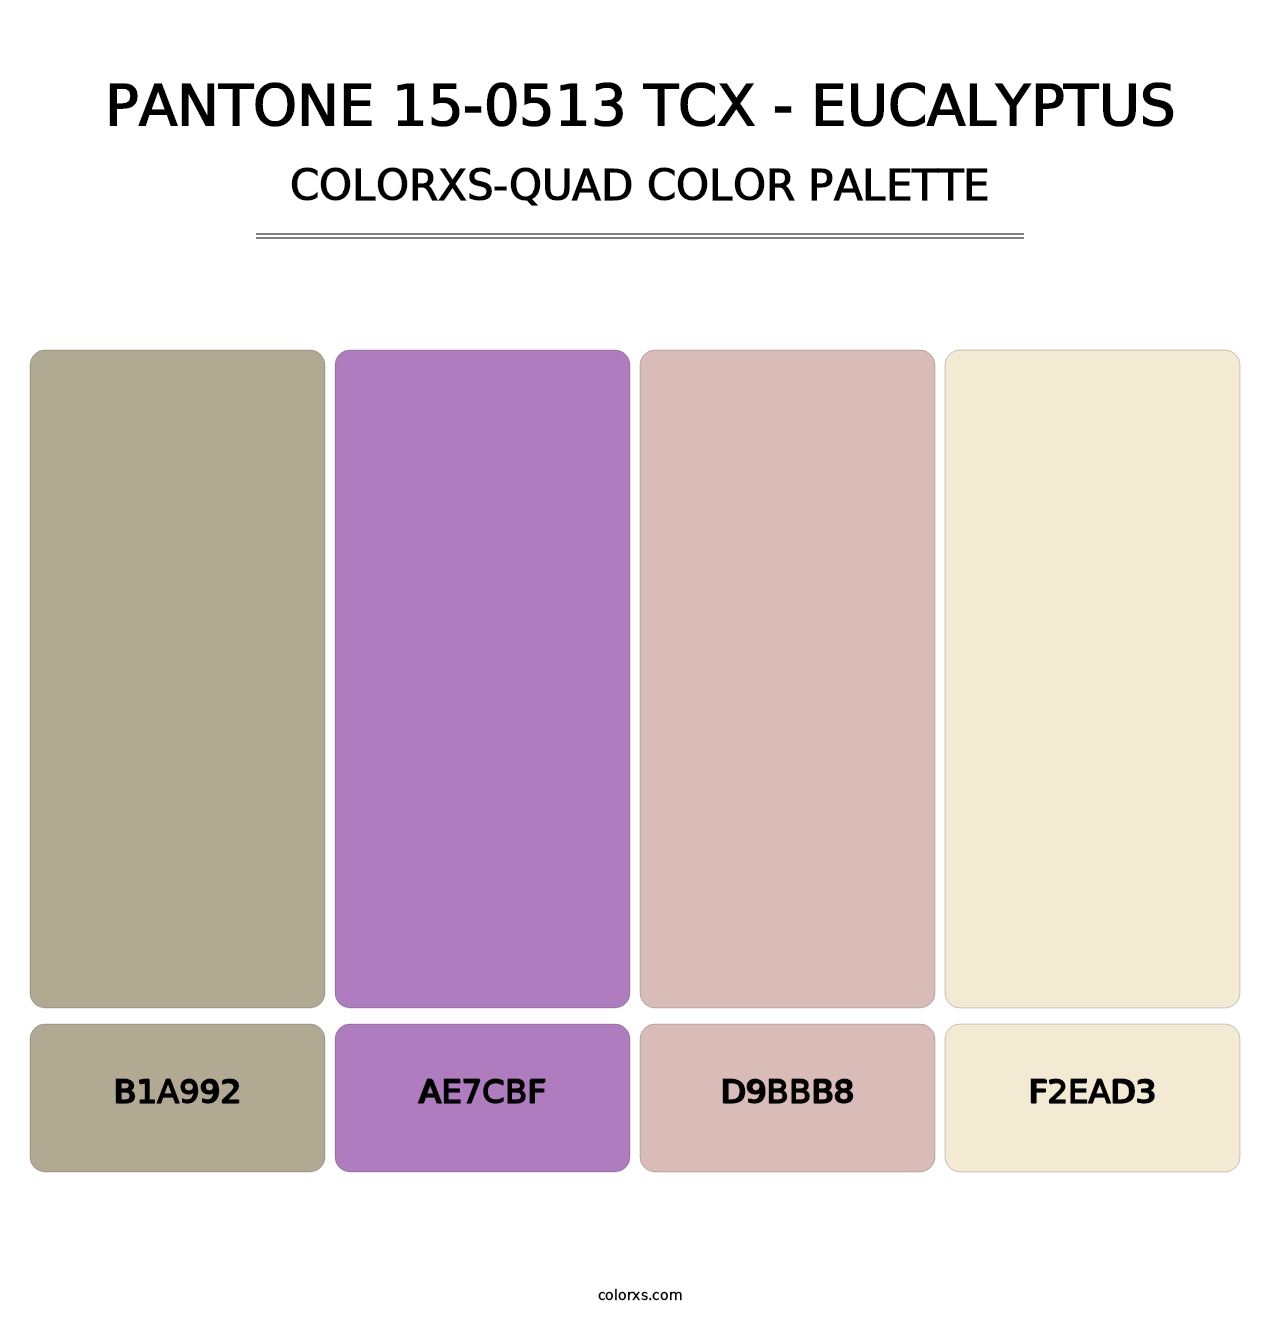 PANTONE 15-0513 TCX - Eucalyptus - Colorxs Quad Palette